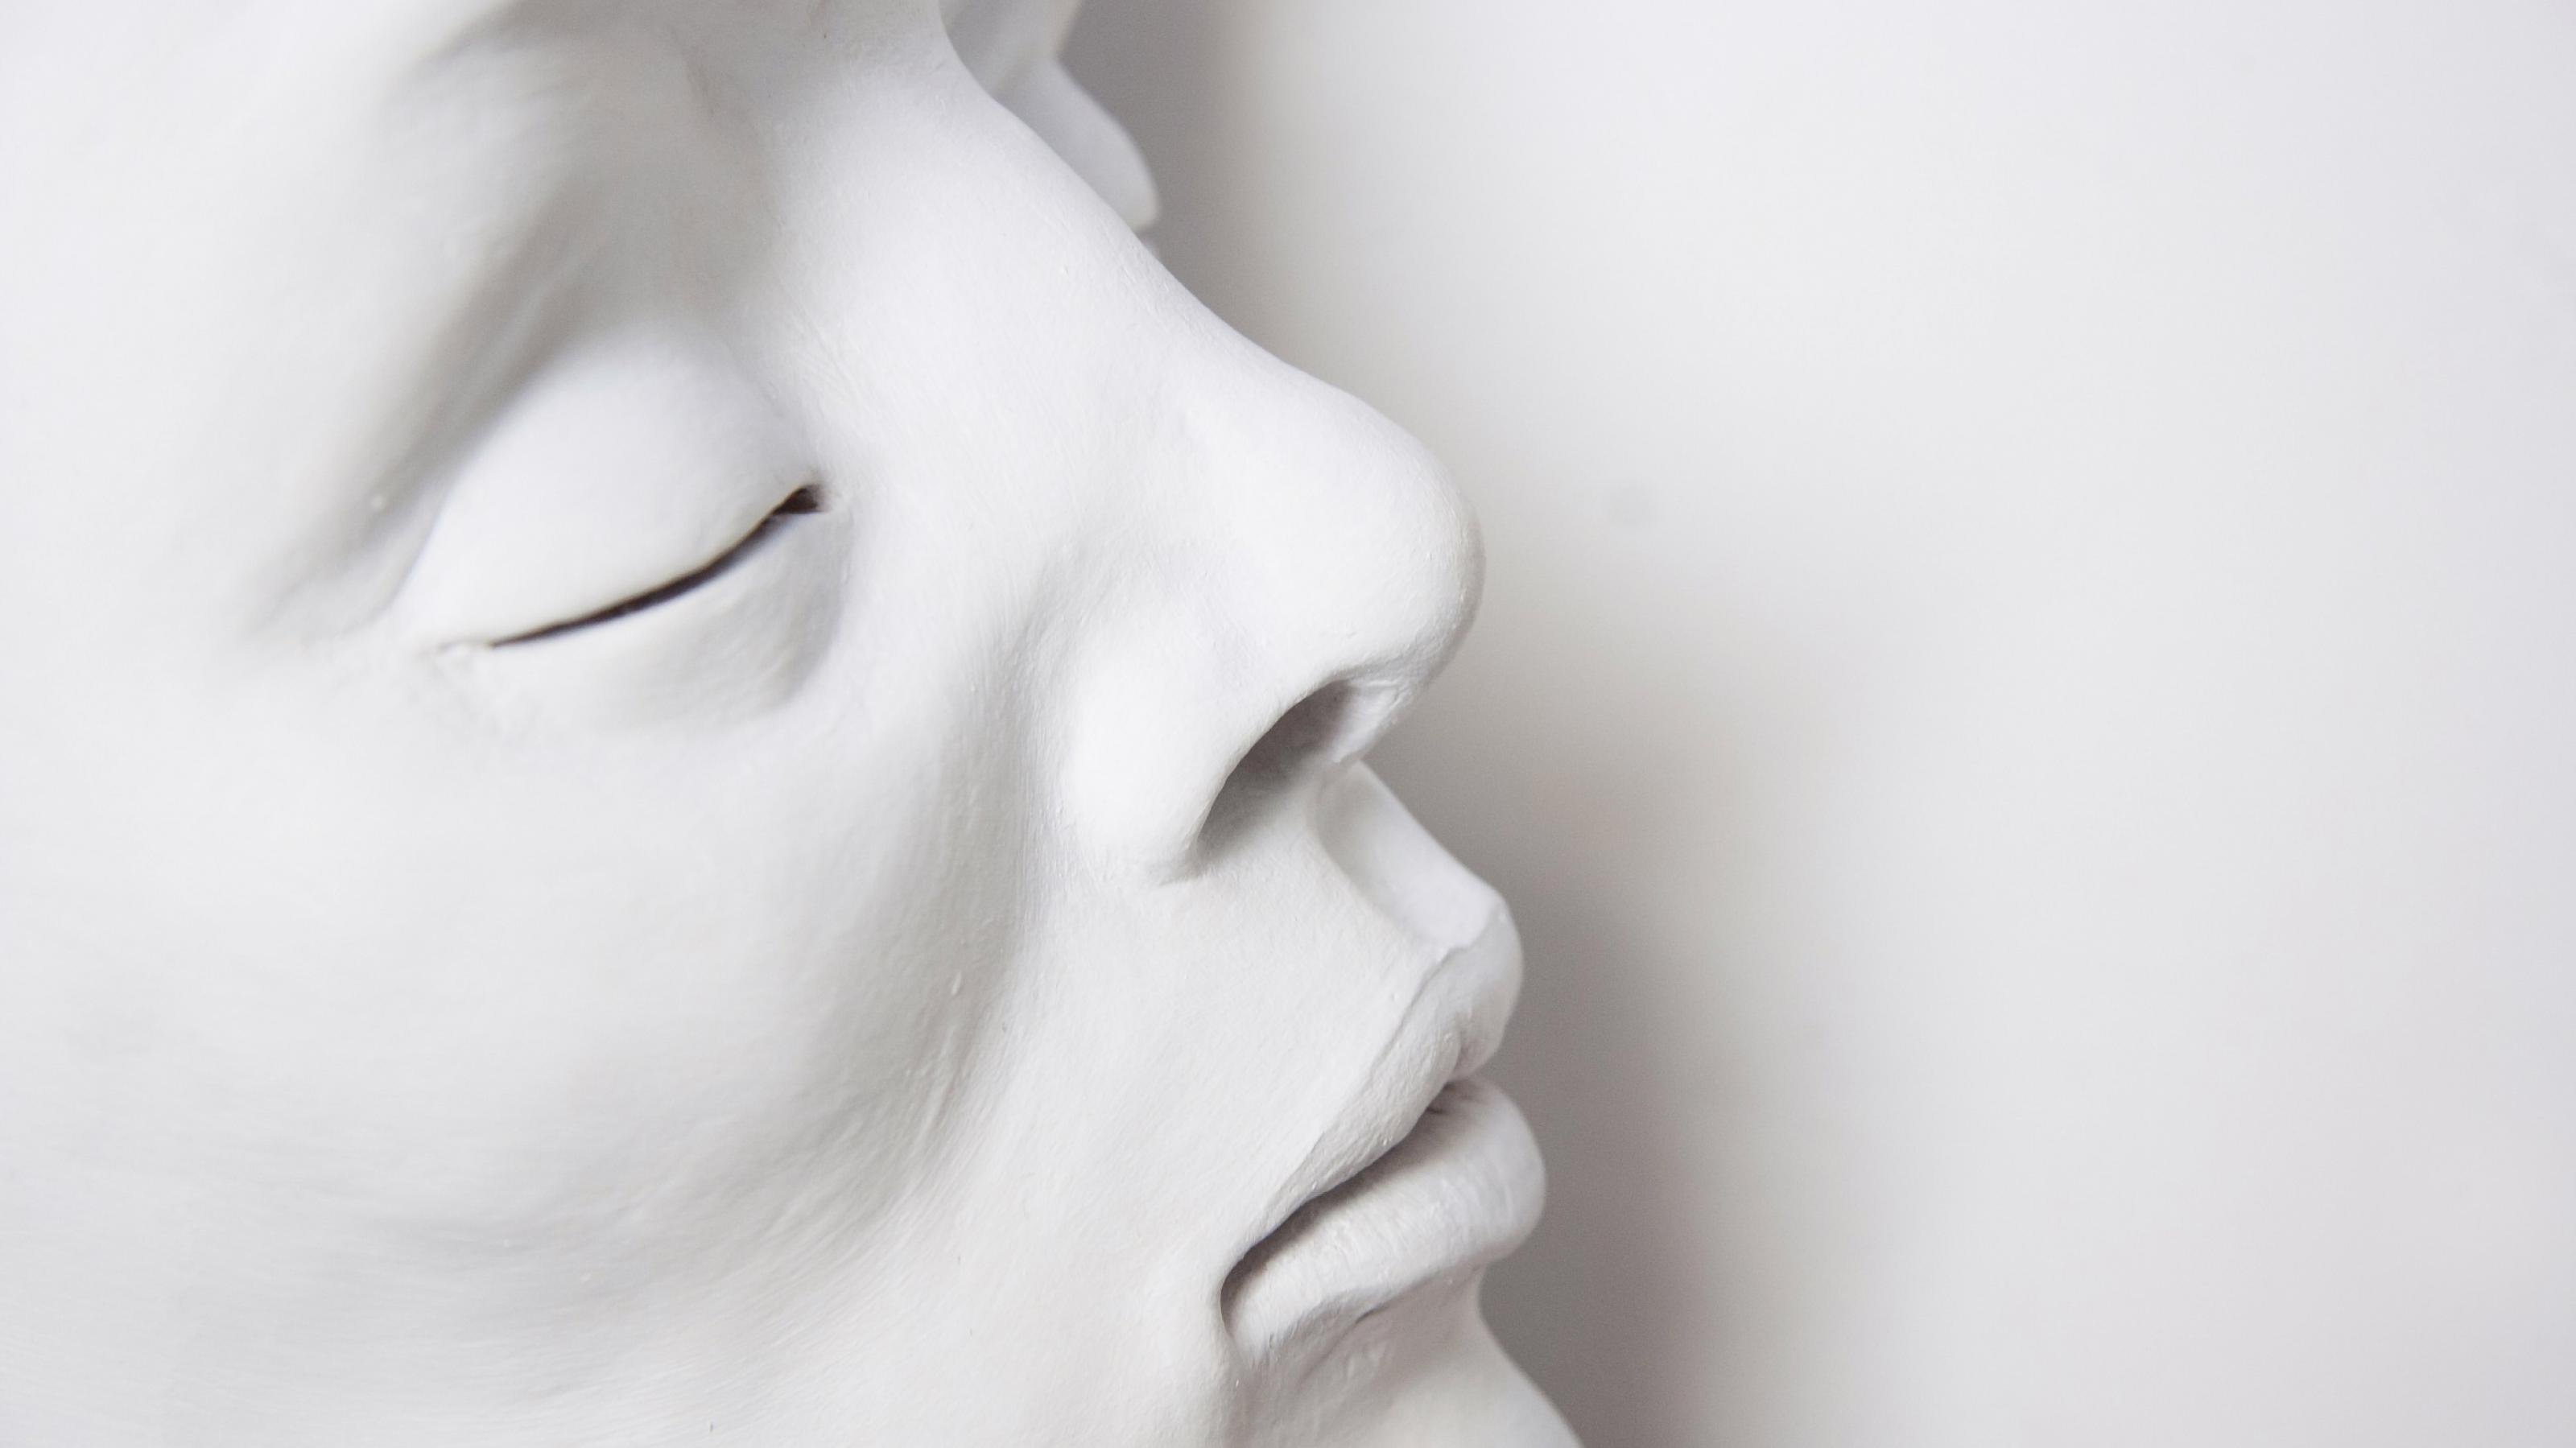 Komplett weiß geschminktes Gesicht einer schlafenden Frau mit geschlossenen Augenlidern